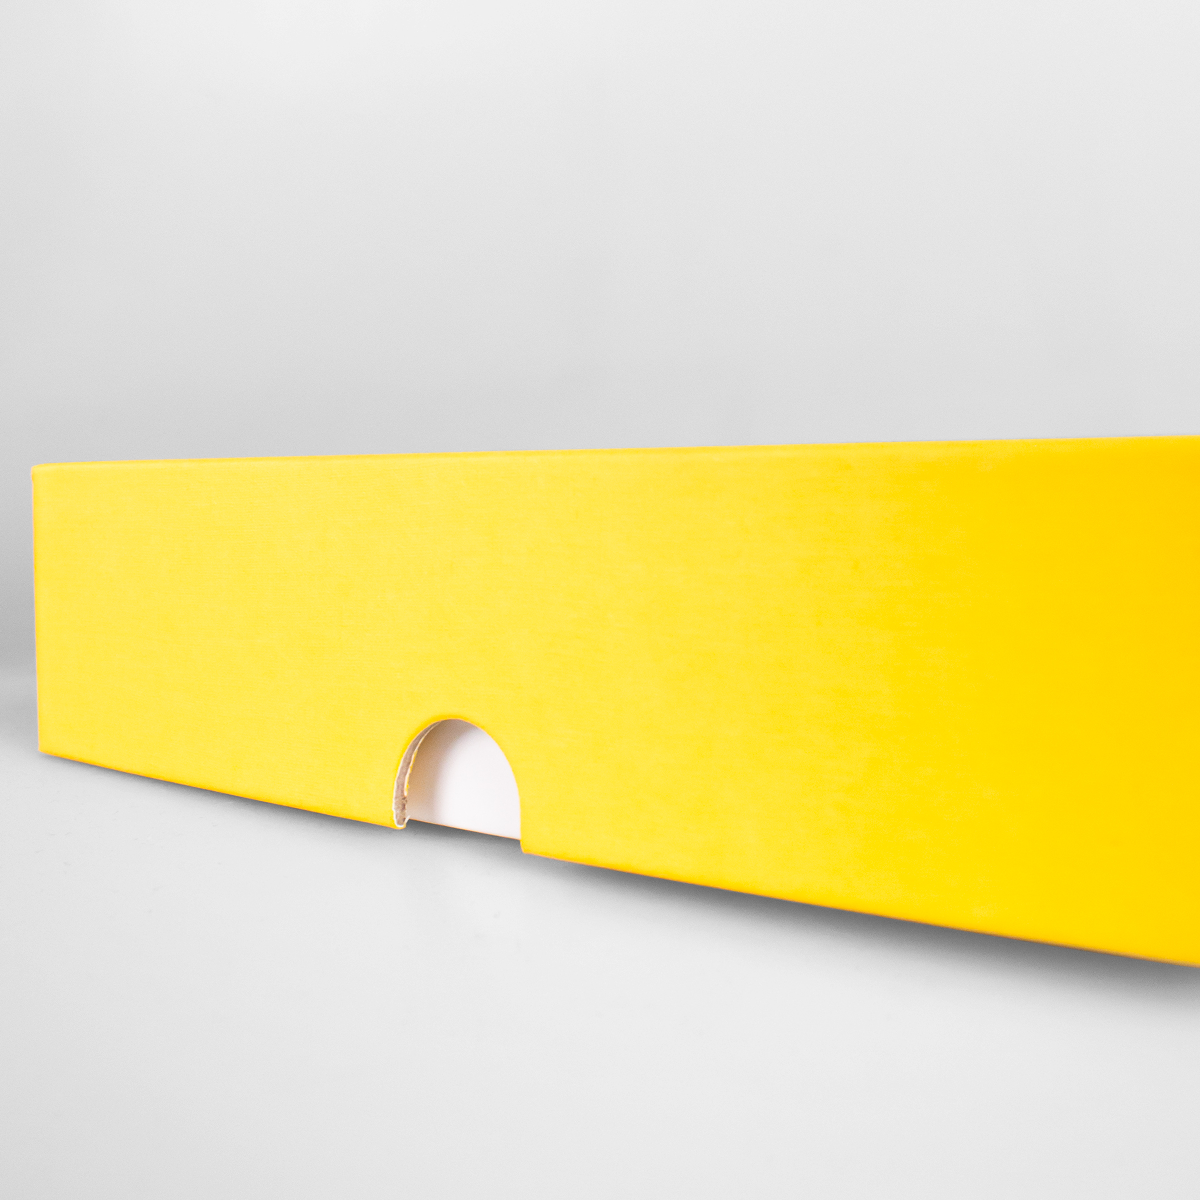 Подарочная коробка крышка-дно, 21.5 x 10.5 x 5 см. "Радуга", желтый, белый